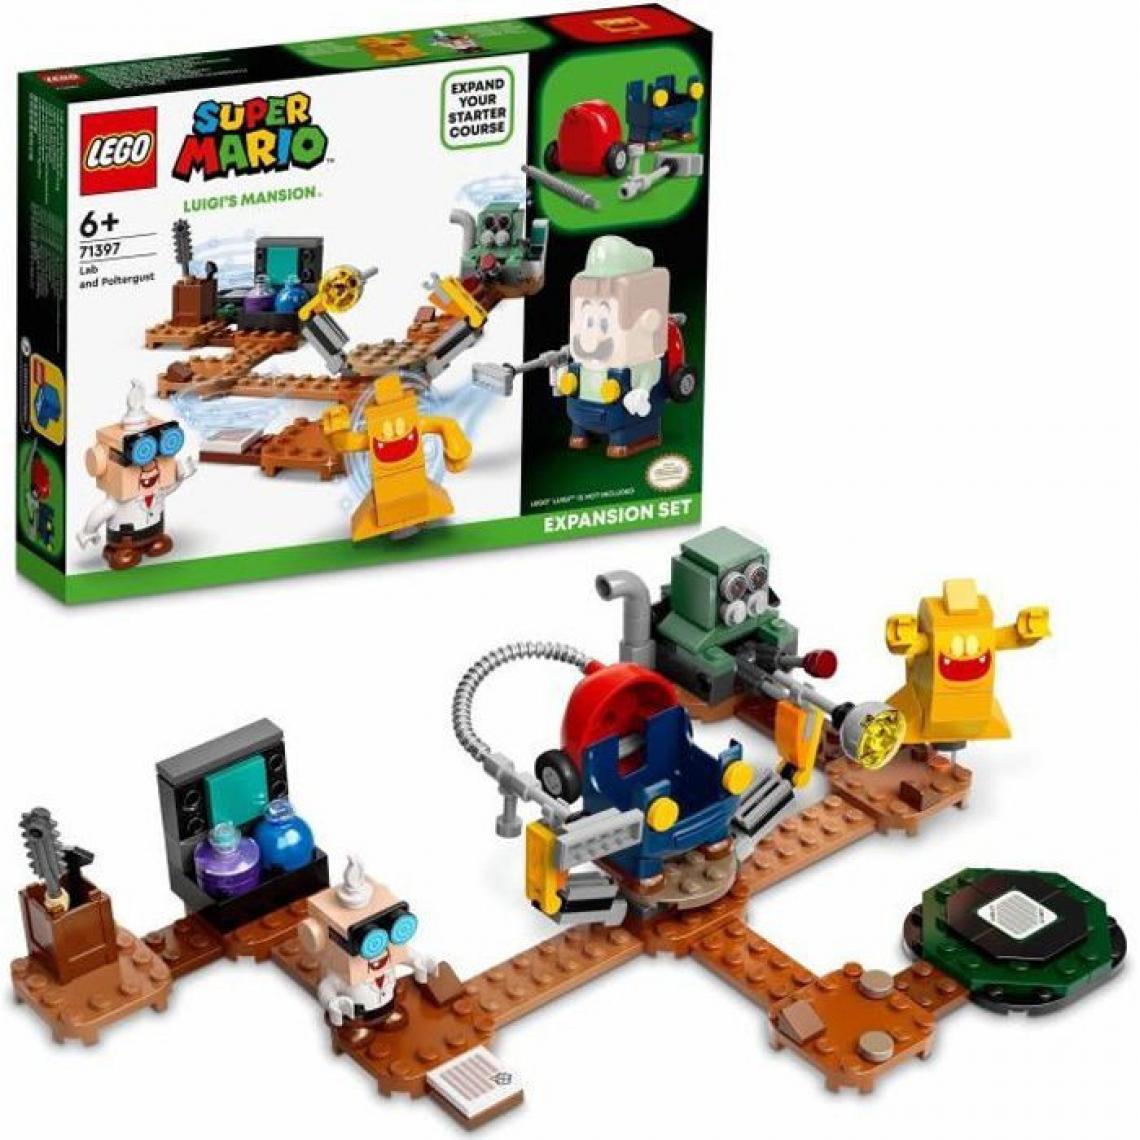 Lego - LEGO 71397 Super Mario Set d'Extension Labo et Ectoblast de Luigi's Mansion, Jeu de Construction pour Enfants +6 Ans - Briques Lego